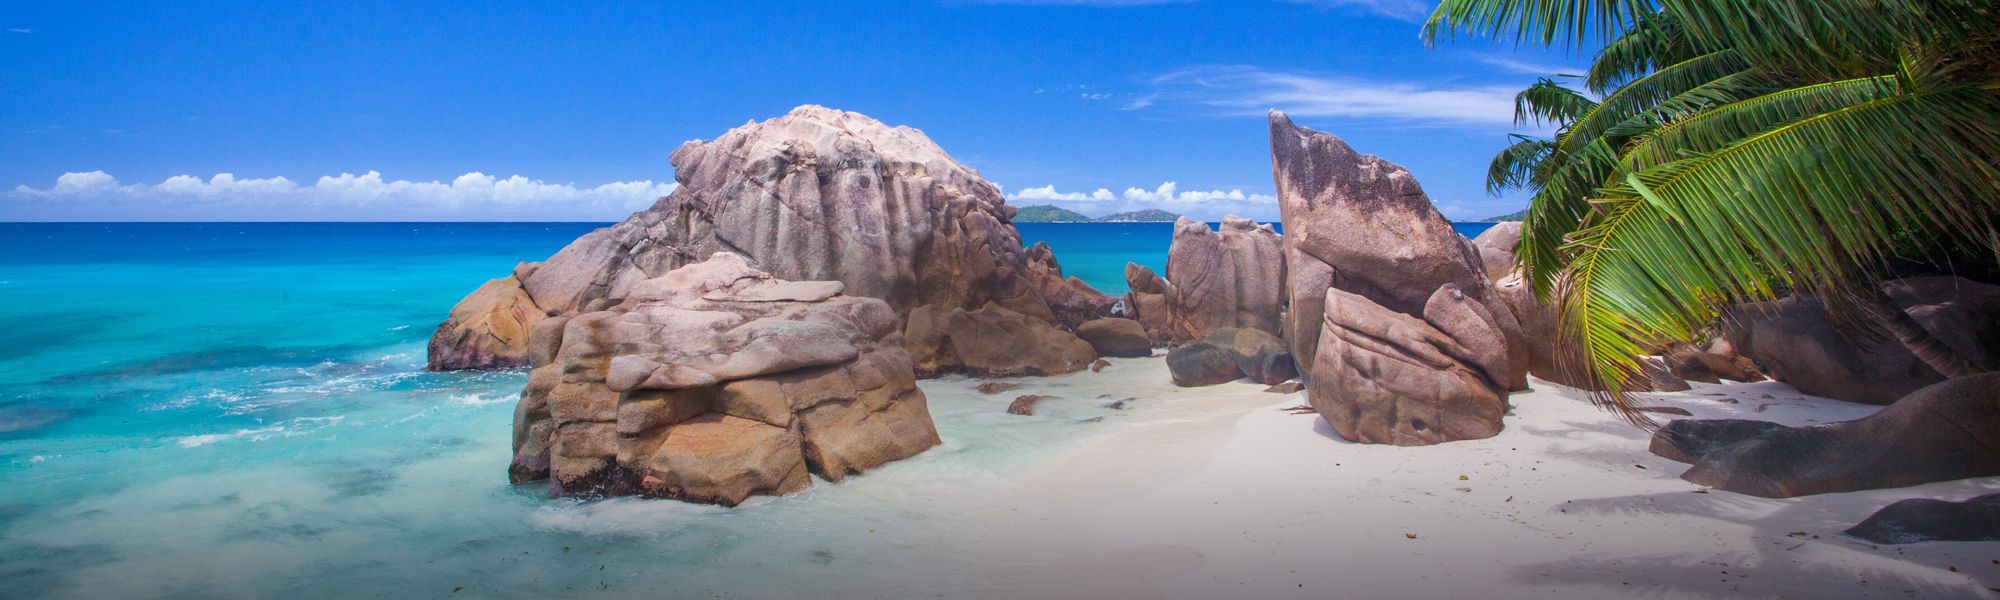 Croisière et voile Seychelles © Raymond Sahuquet/Seychelles Tourism Board